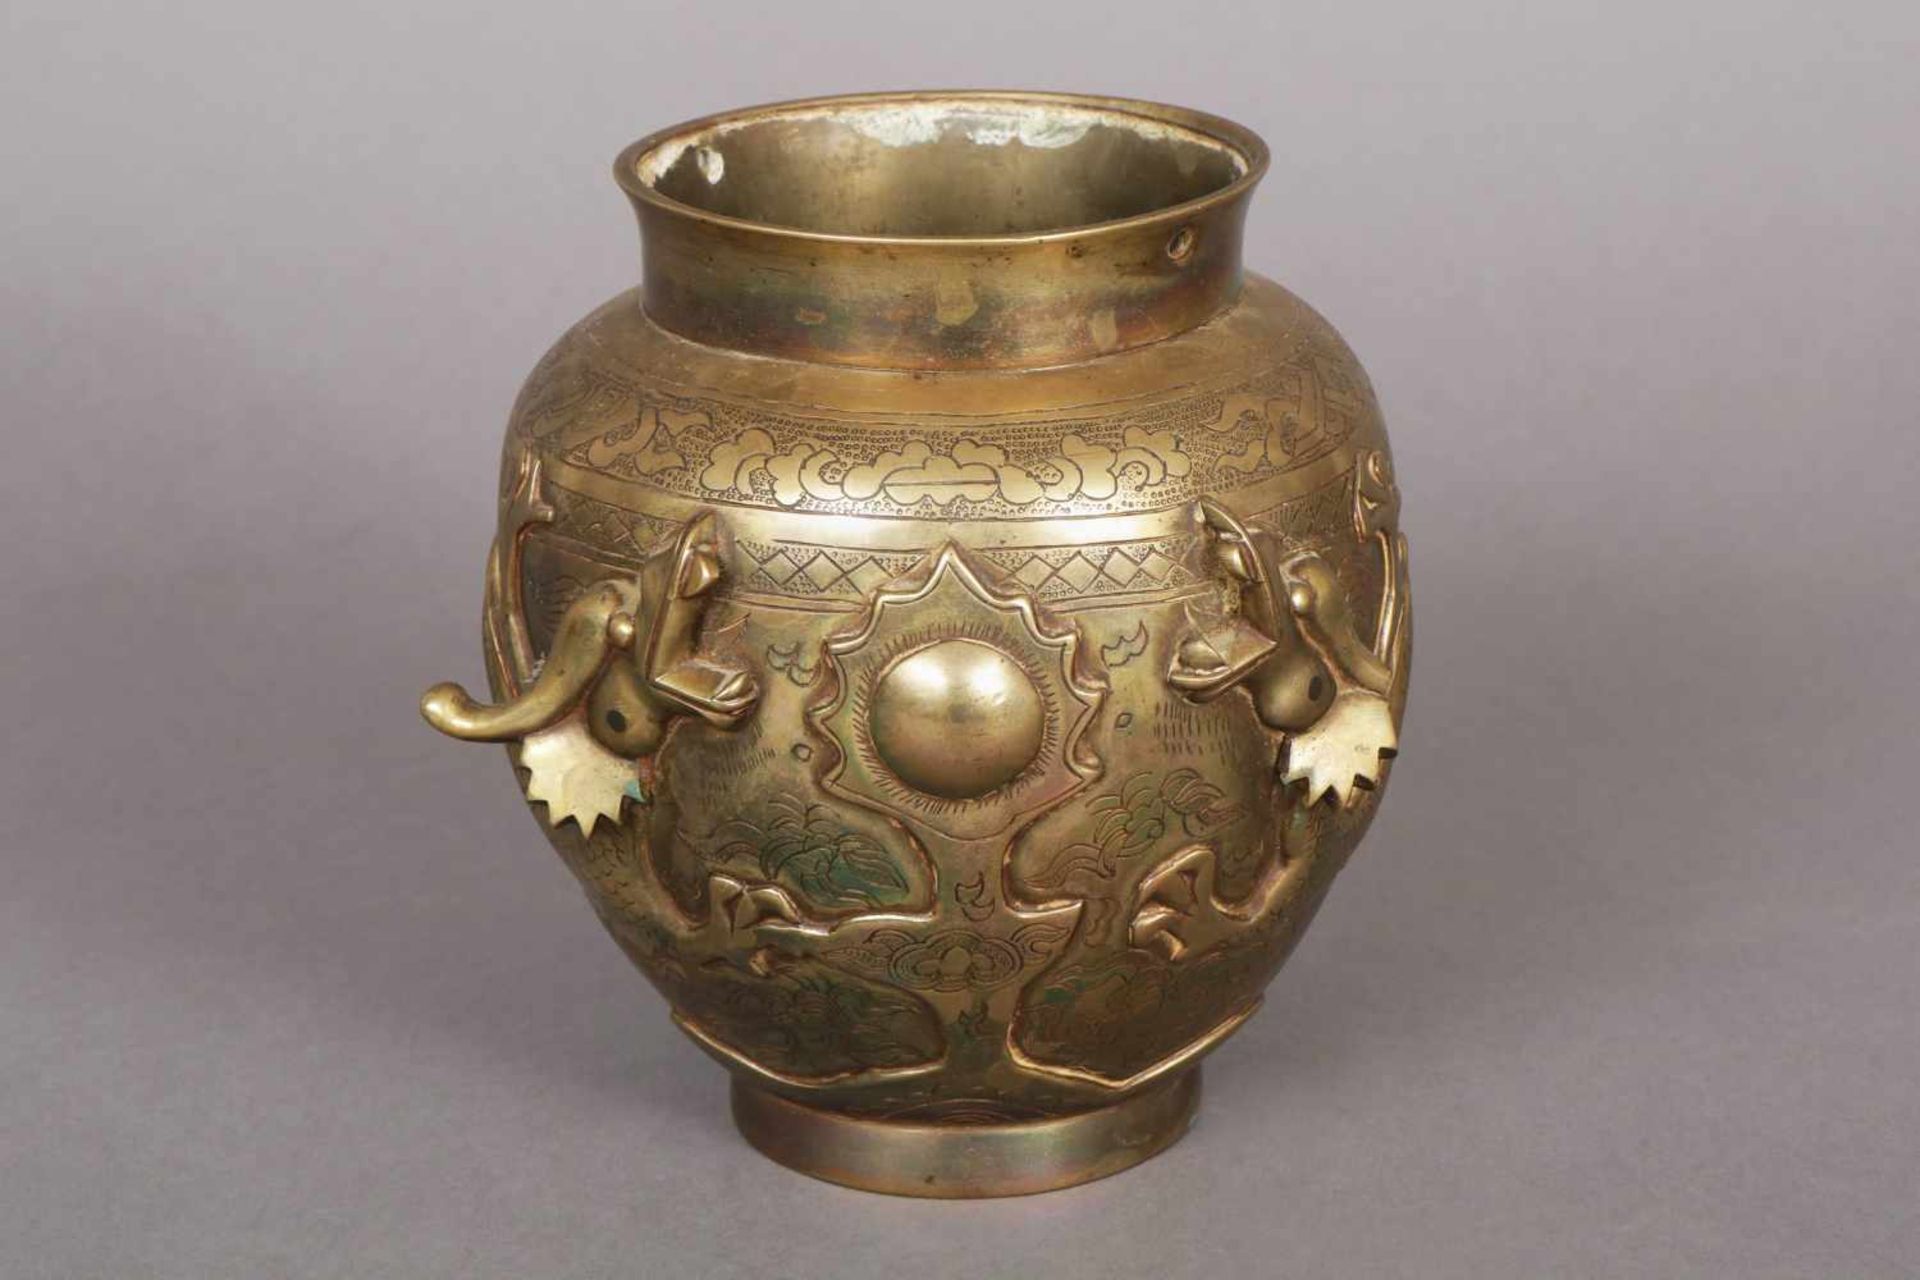 Chinesische Bronzevase bauchiges Vasengefäß mit reliefplastischem Drachen- sowie üppigem